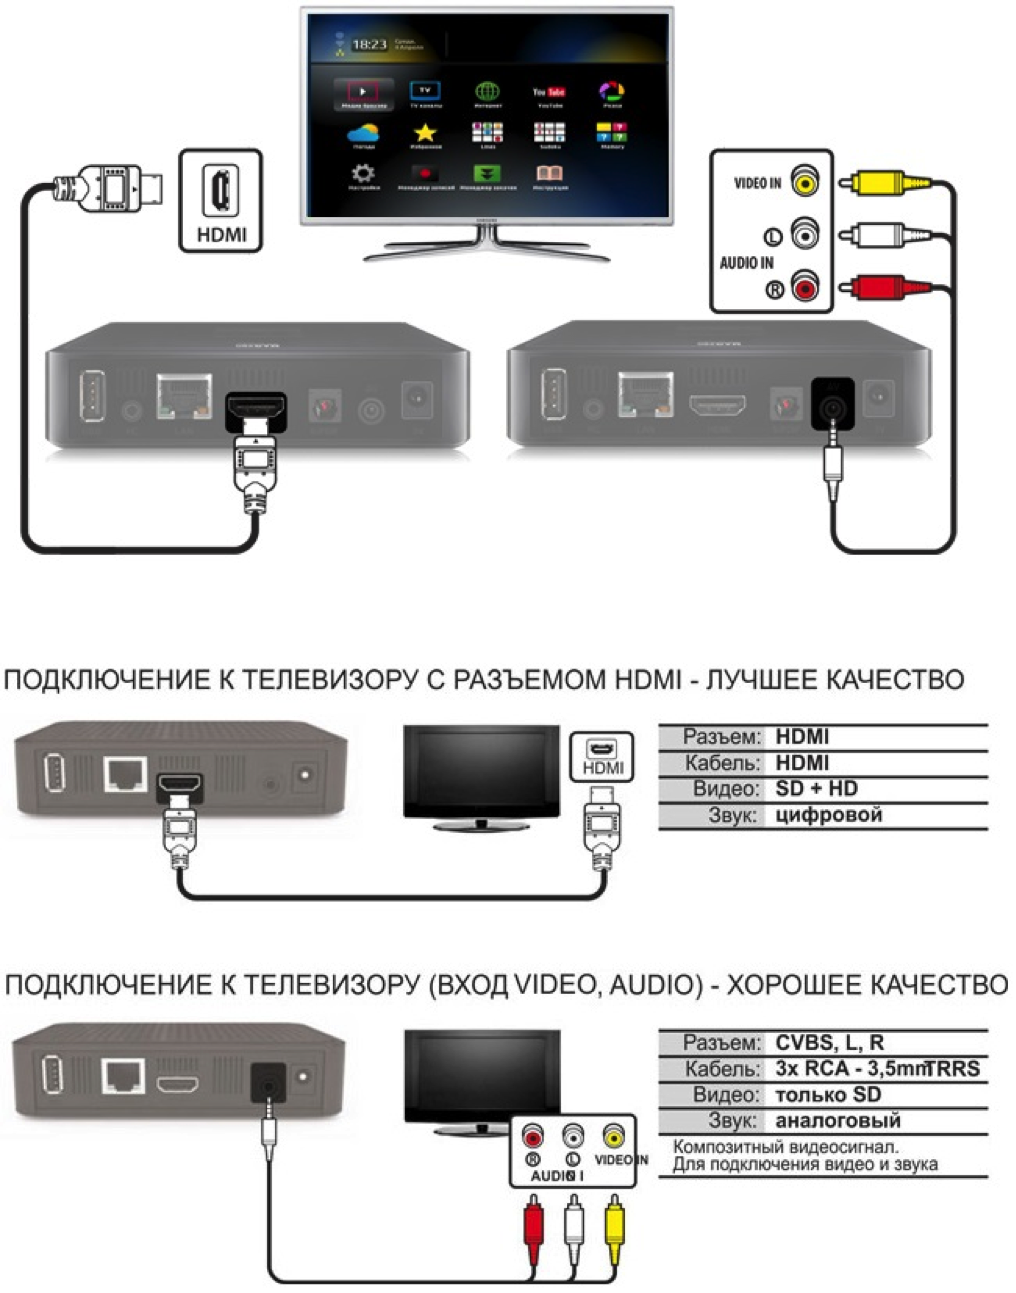 Подключение приставки android tv box к телевизору — инструкция как настроить смарт тв через wifi роутер?